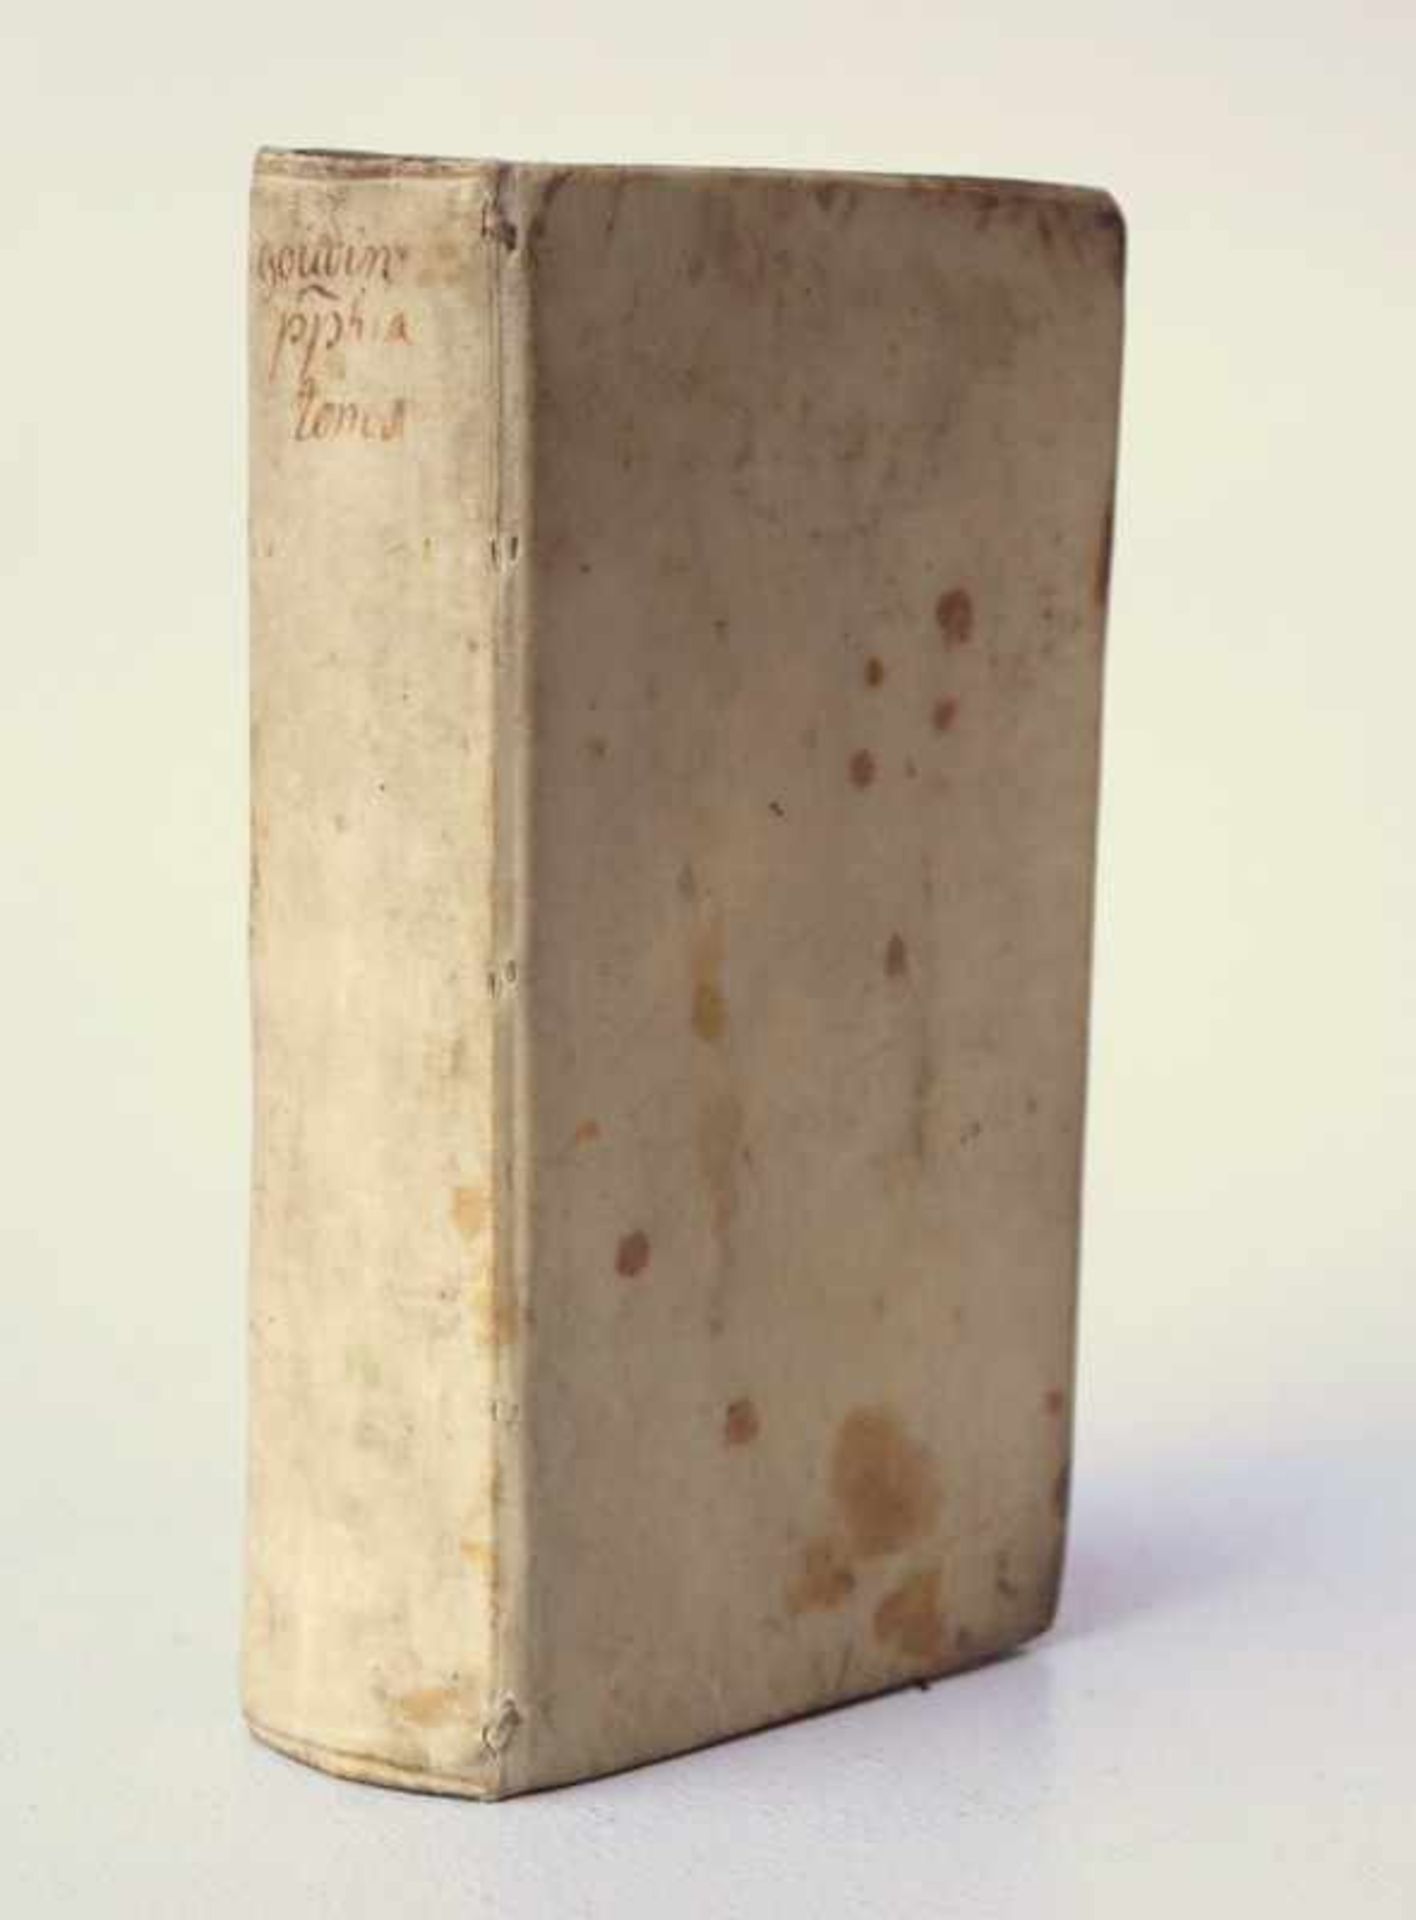 Goudin, Antonio (1639-1695): Philosophia iuxta inconcussa tutissimaque divi Thomae dogmata: - Image 2 of 3